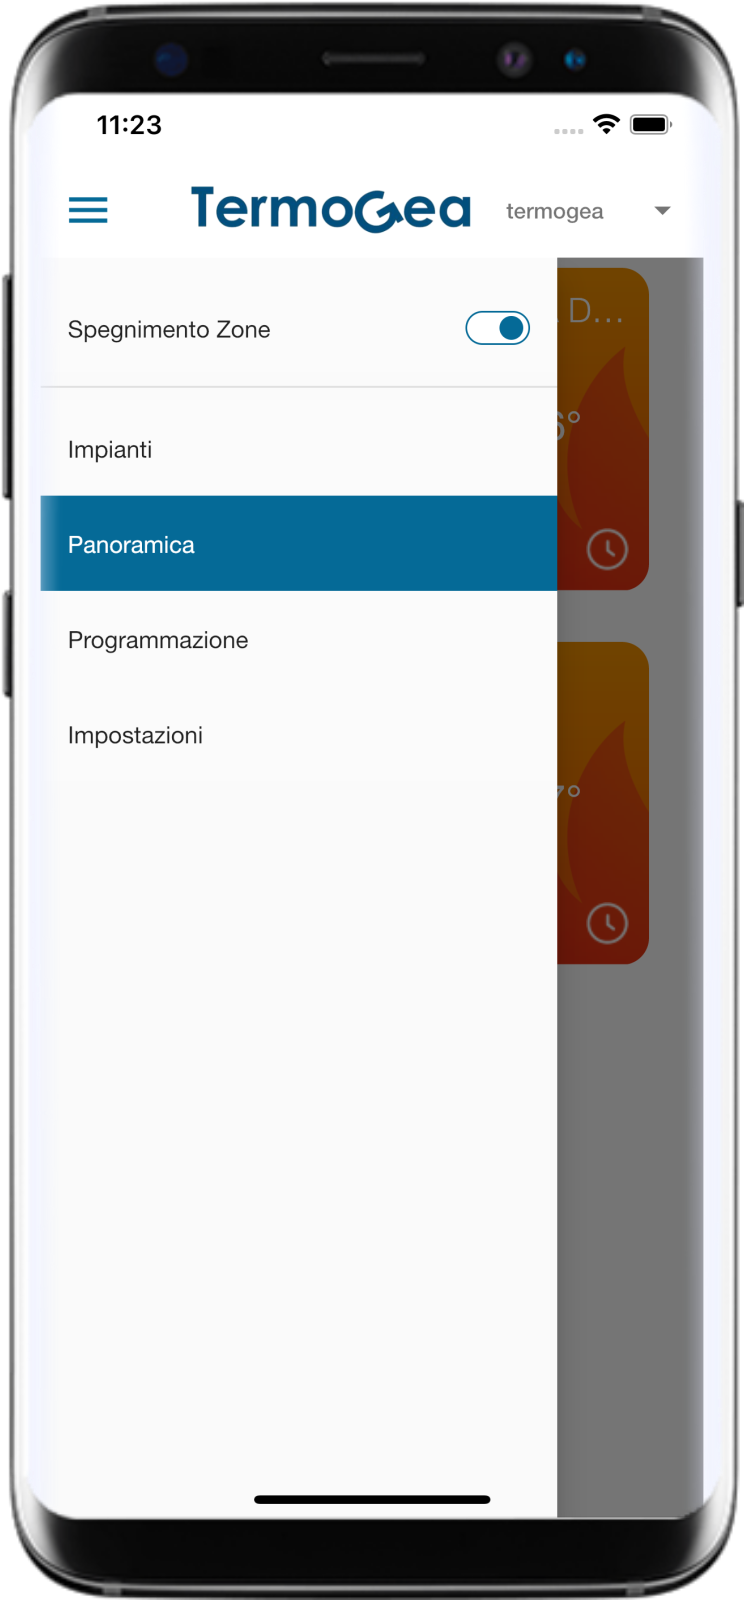 Termogea App IoS & Android main menù.